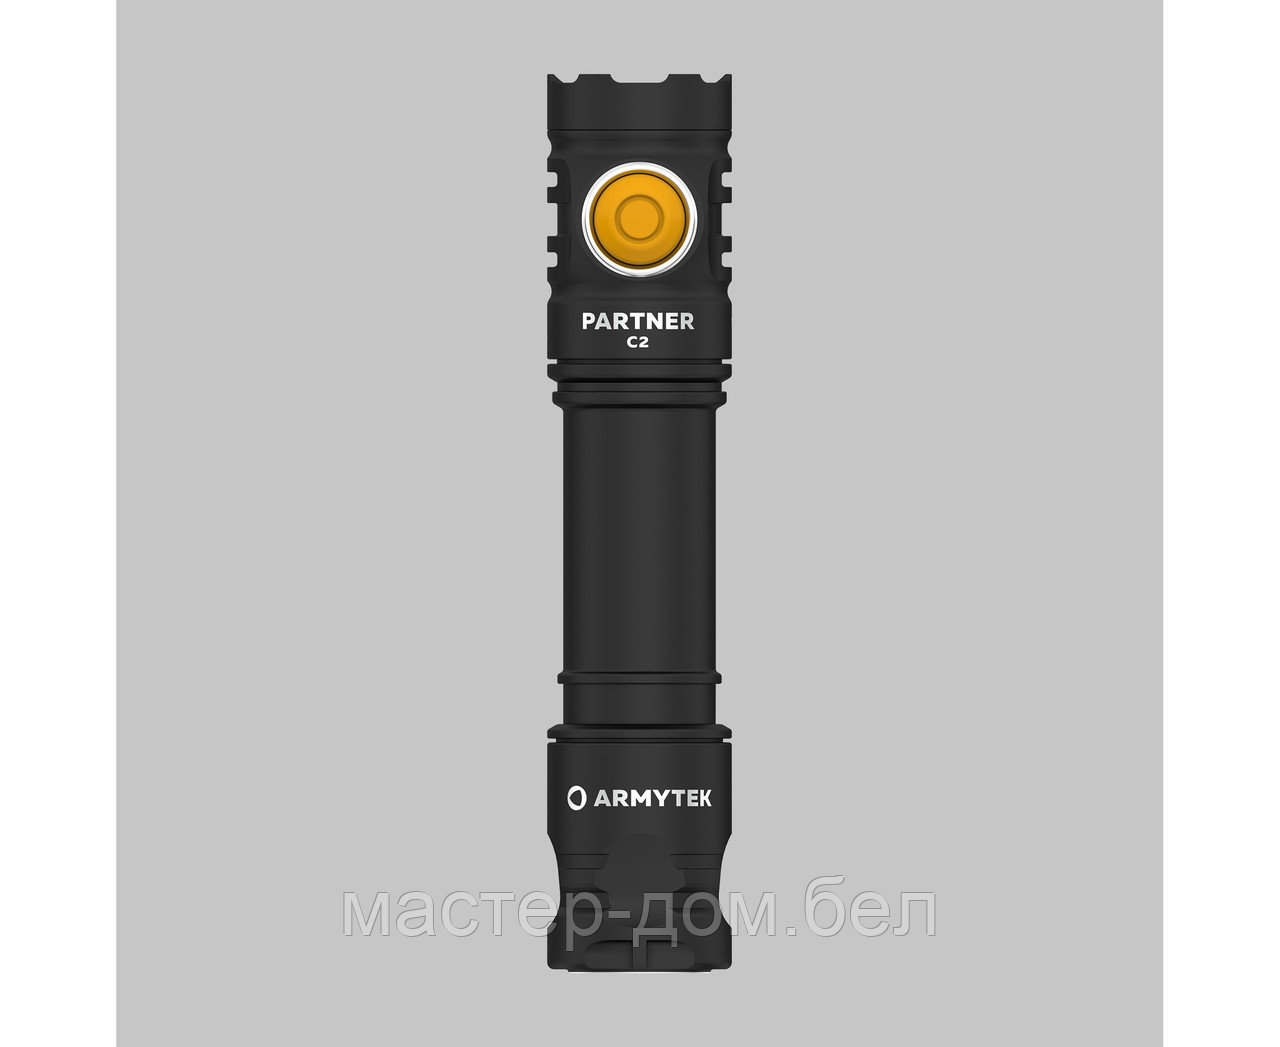 Фонарь Armytek Partner C2 Magnet USB Белый